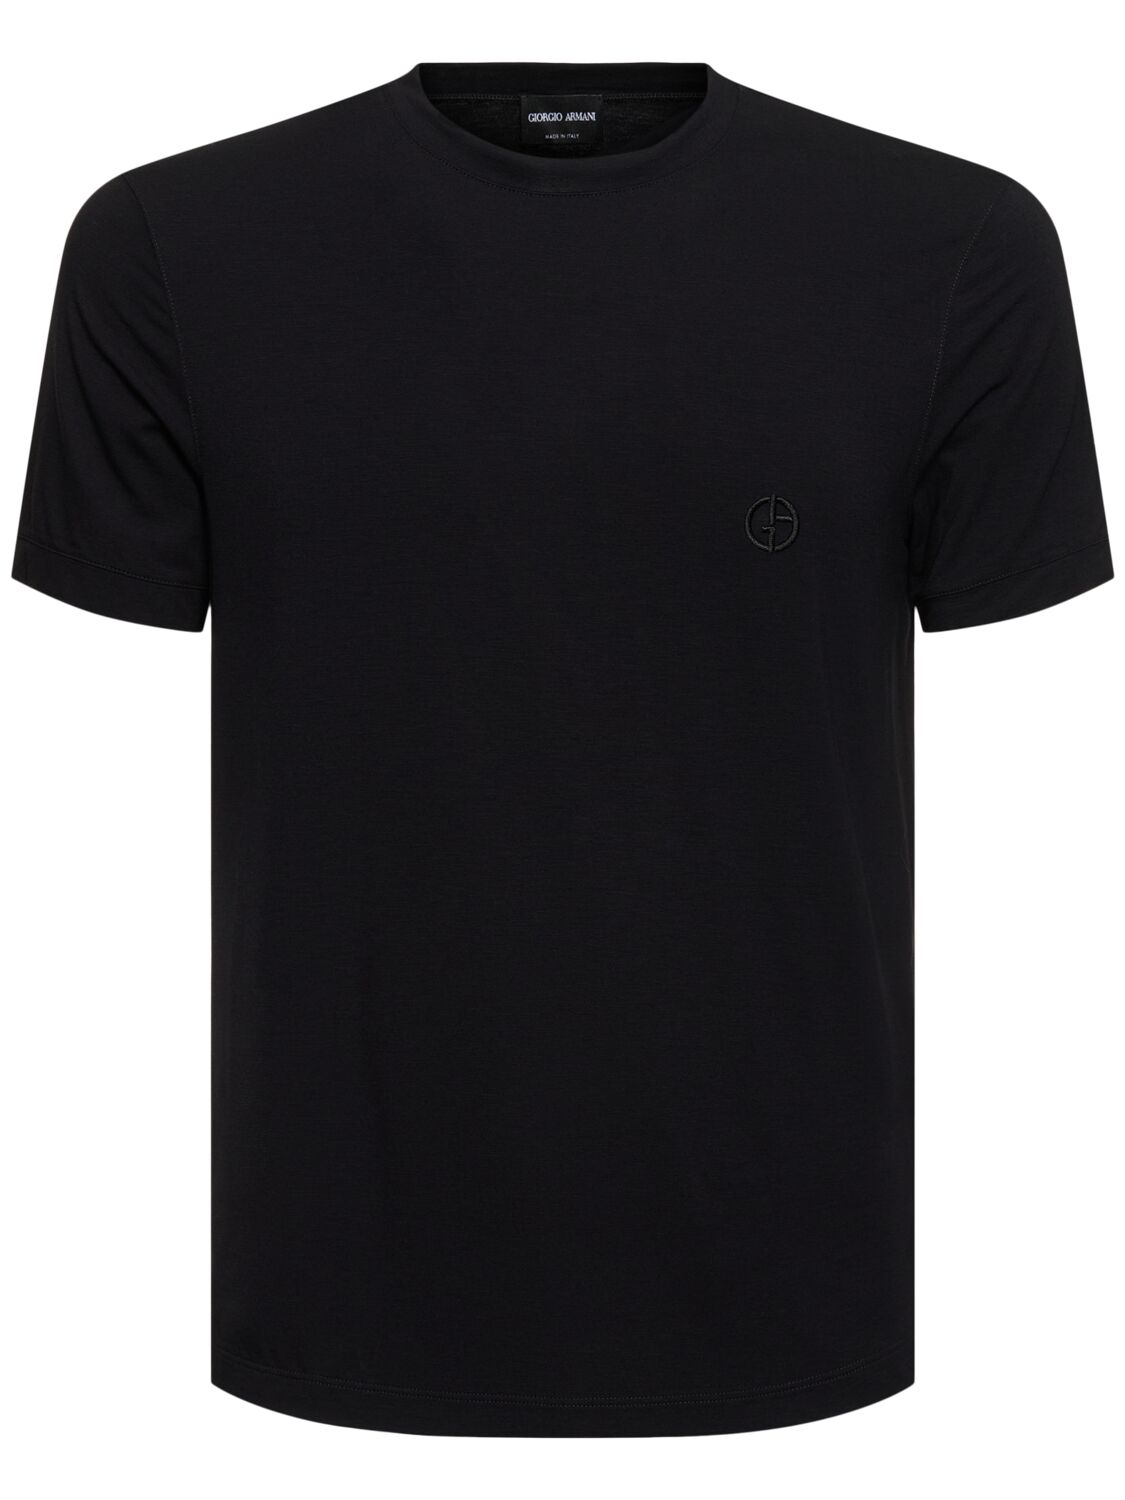 Giorgio Armani Mercerized Viscose Jersey T-shirt In Black